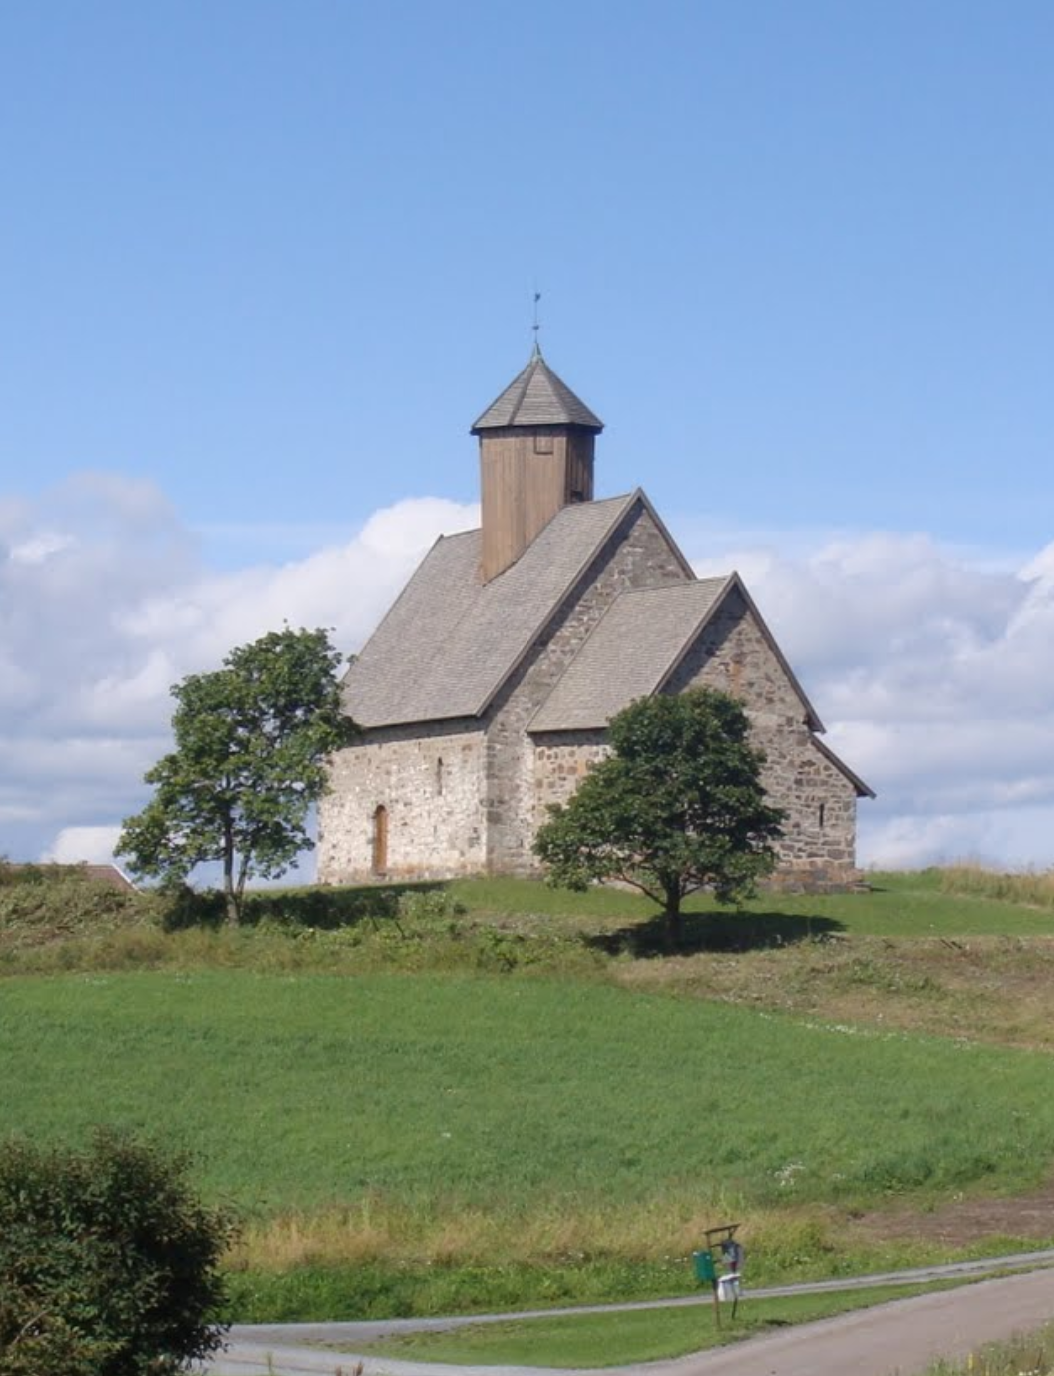 St. Petri kirken